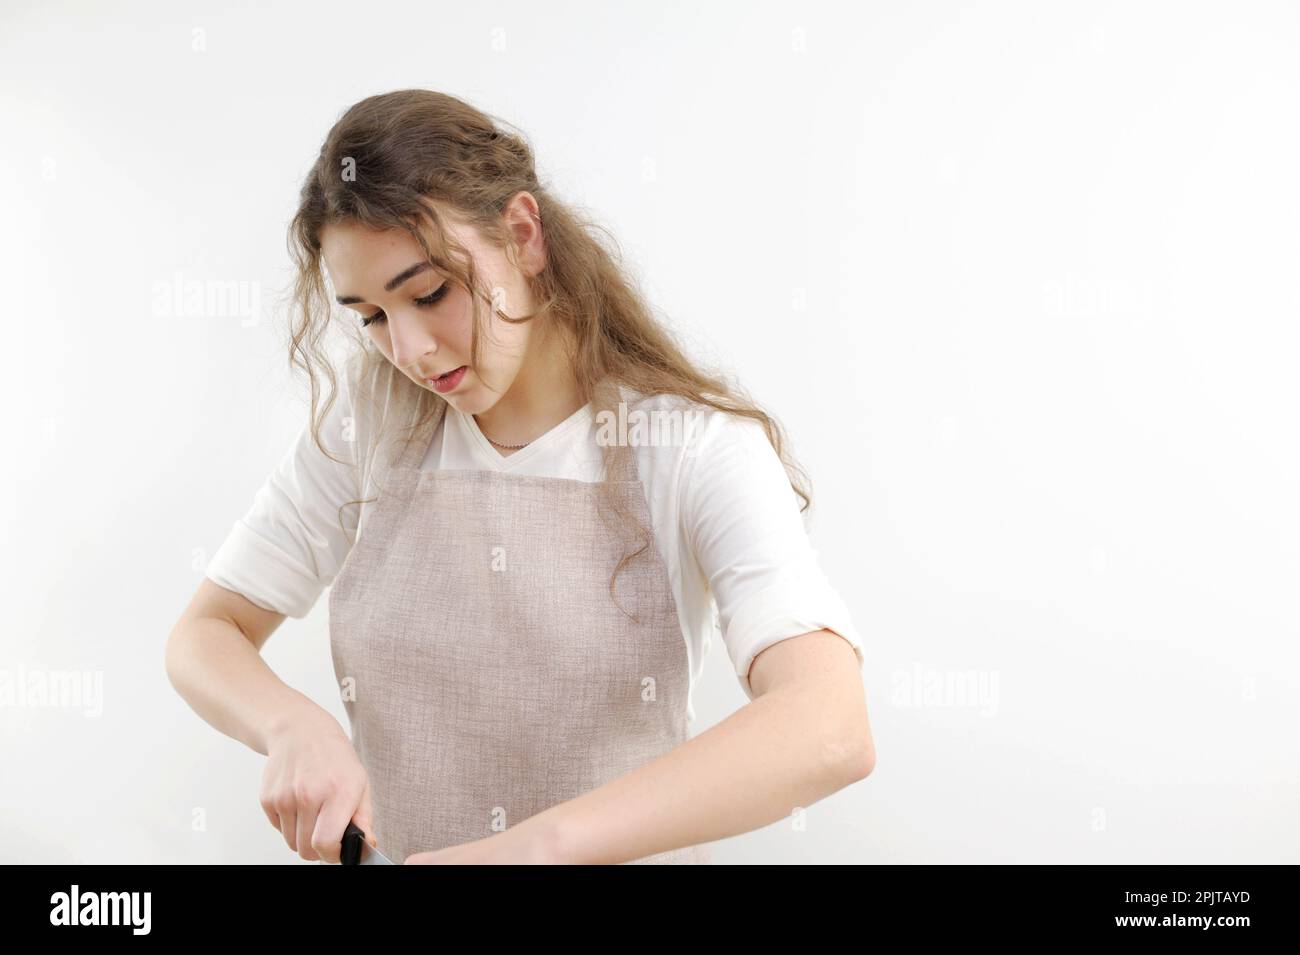 Ein junges Mädchen, das sich umgebogen hat, schneidet etwas aus der Nähe, das Gesicht eines angelehnten Mannes in einer Schürze. Der Koch bereitet in der Küche zu kochen. Ein weißes T-Shirt auf einer weißen Hintergrundwerbung Stockfoto